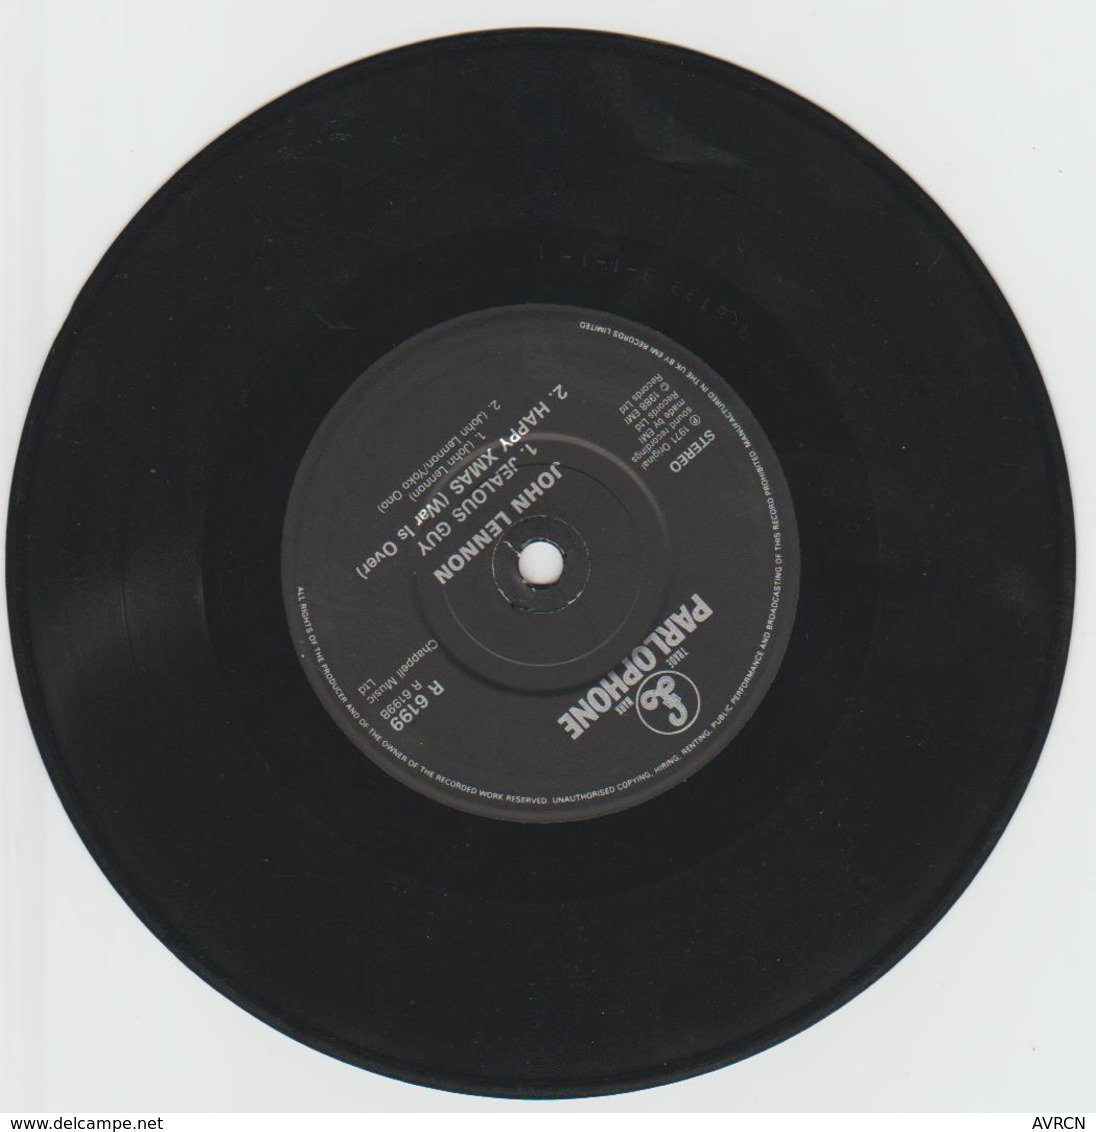 IMAGINE – John LENNON – PARLOPHONE R 6199 - 1971- Réservé Radios . - Limitierte Auflagen